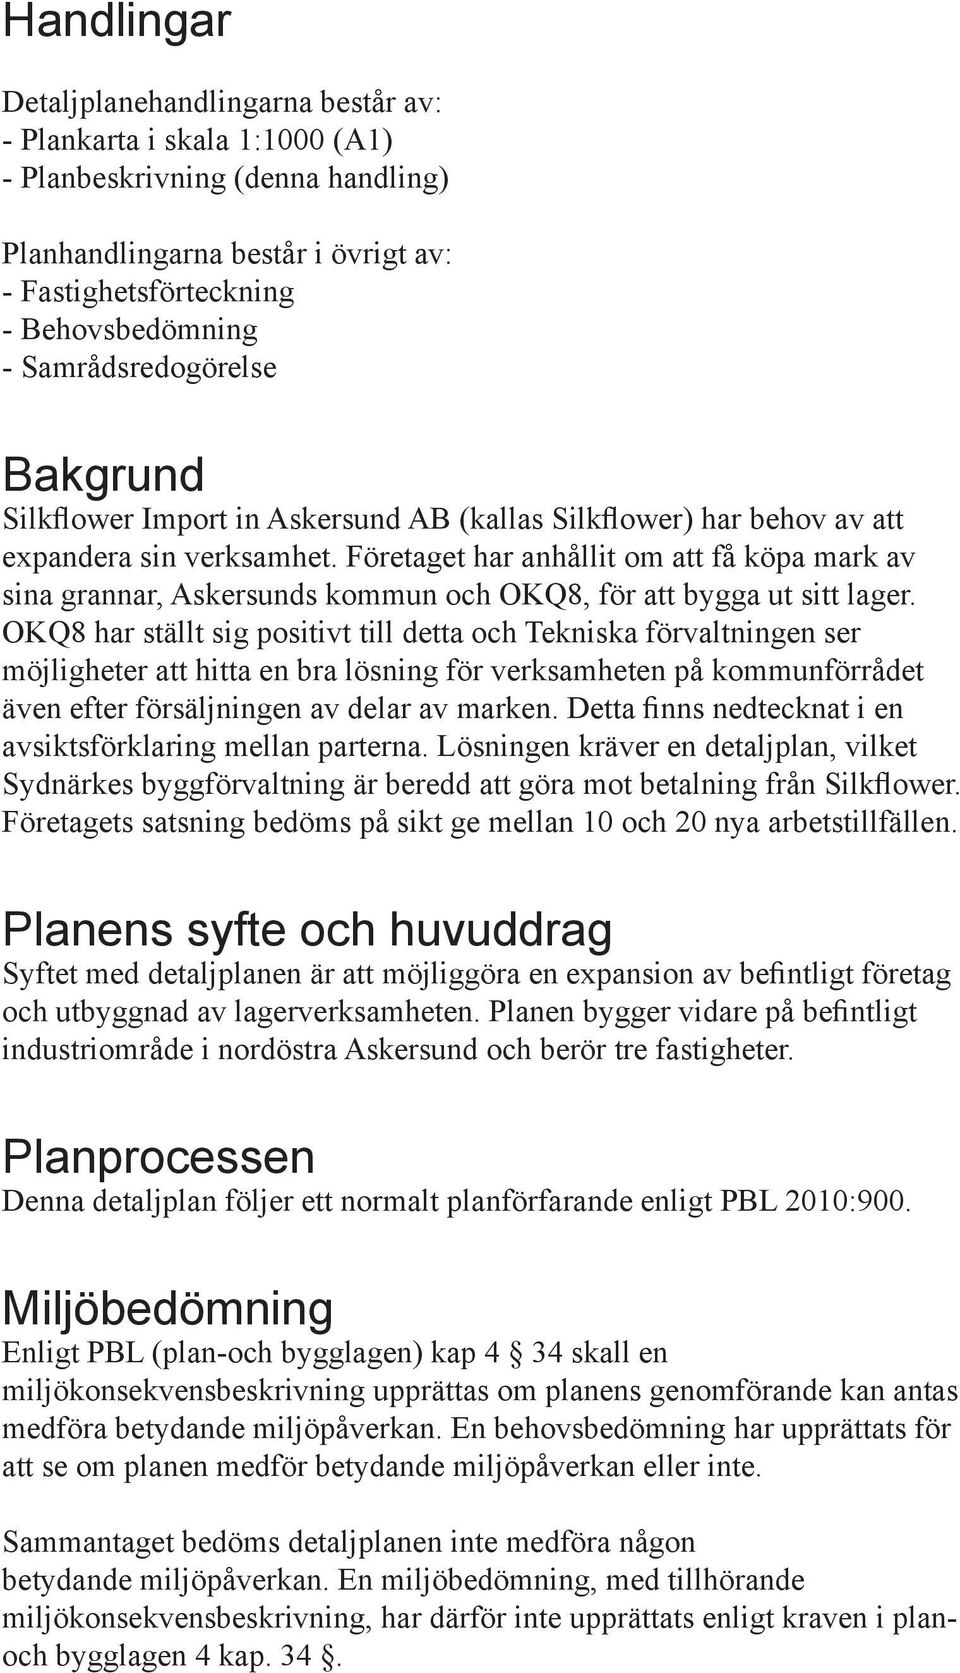 Företaget har anhållit om att få köpa mark av sina grannar, Askersunds kommun och OKQ8, för att bygga ut sitt lager.